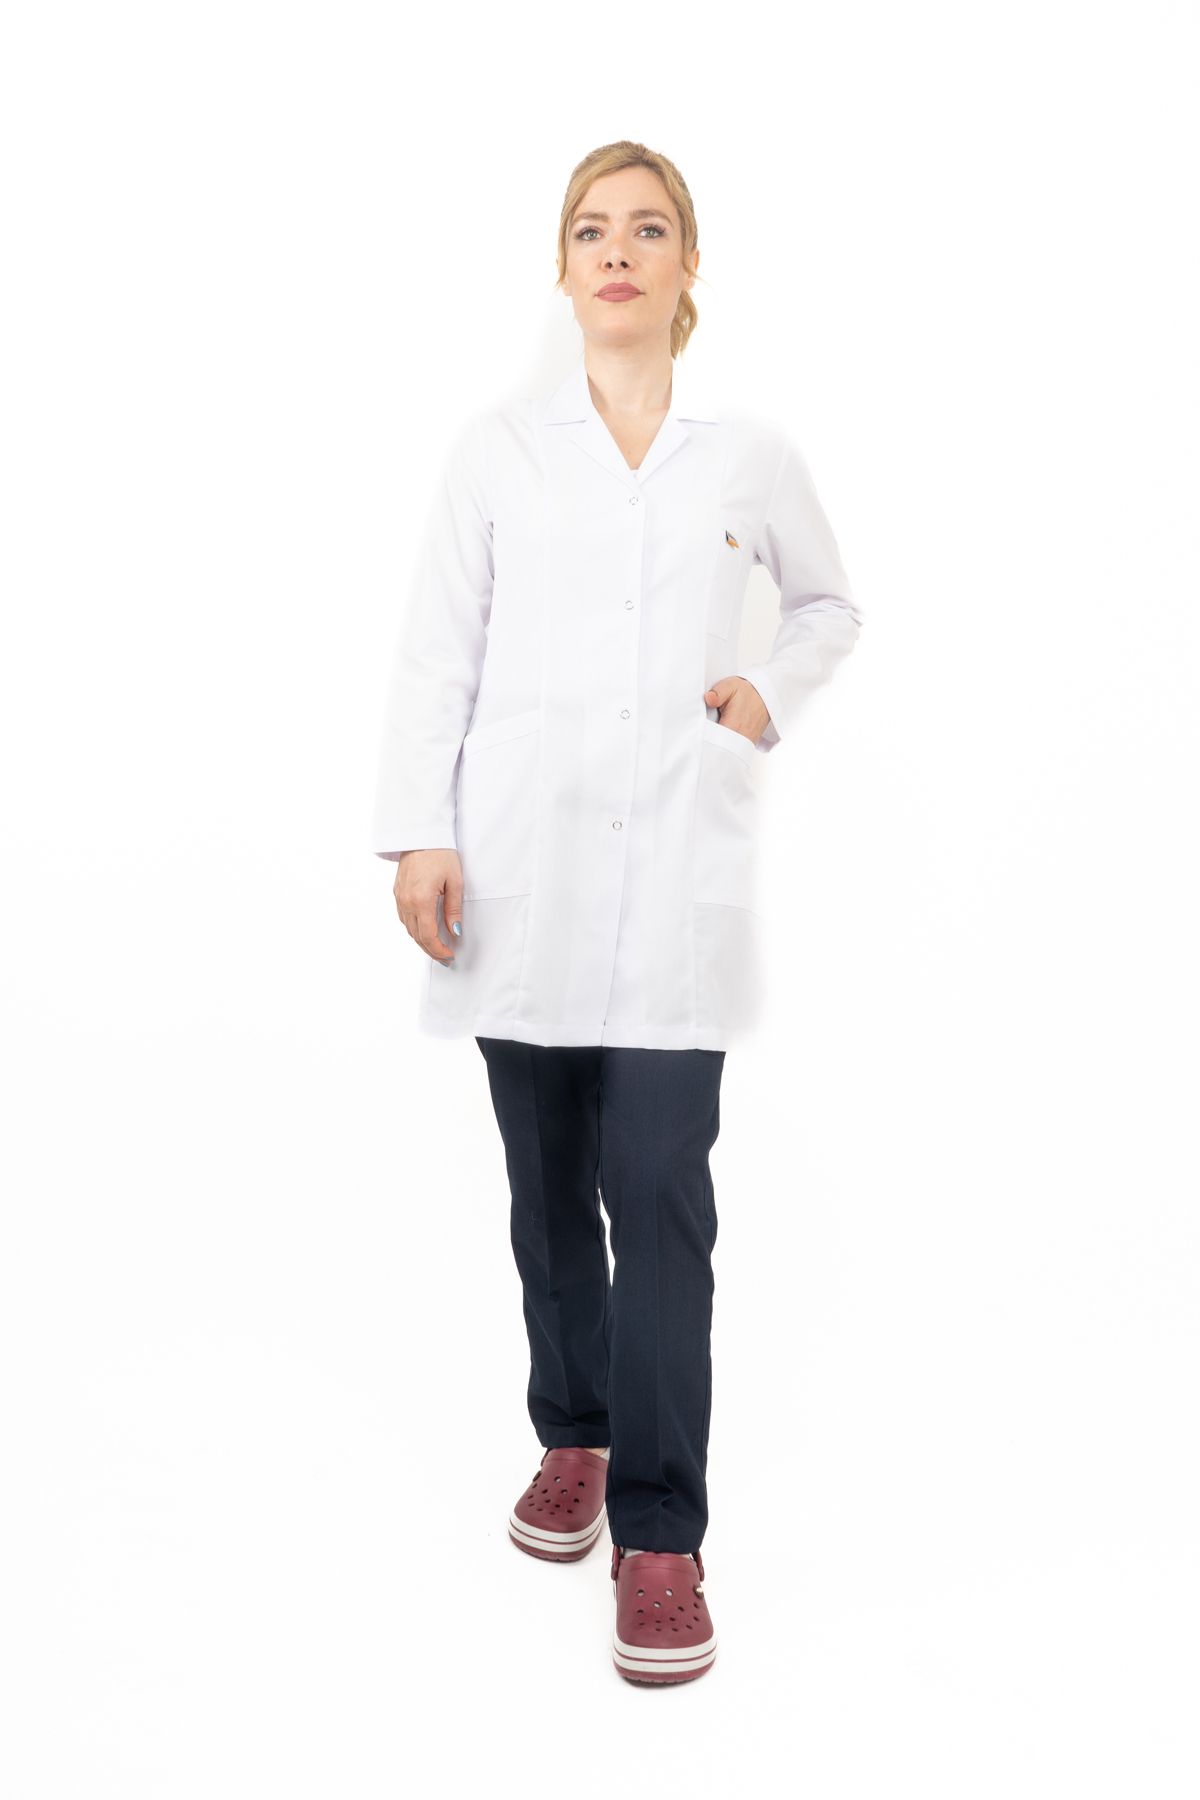 ZENAPRON Kadın Gömlek Yaka Orta Boy Doktor - Öğretmen Önlüğü